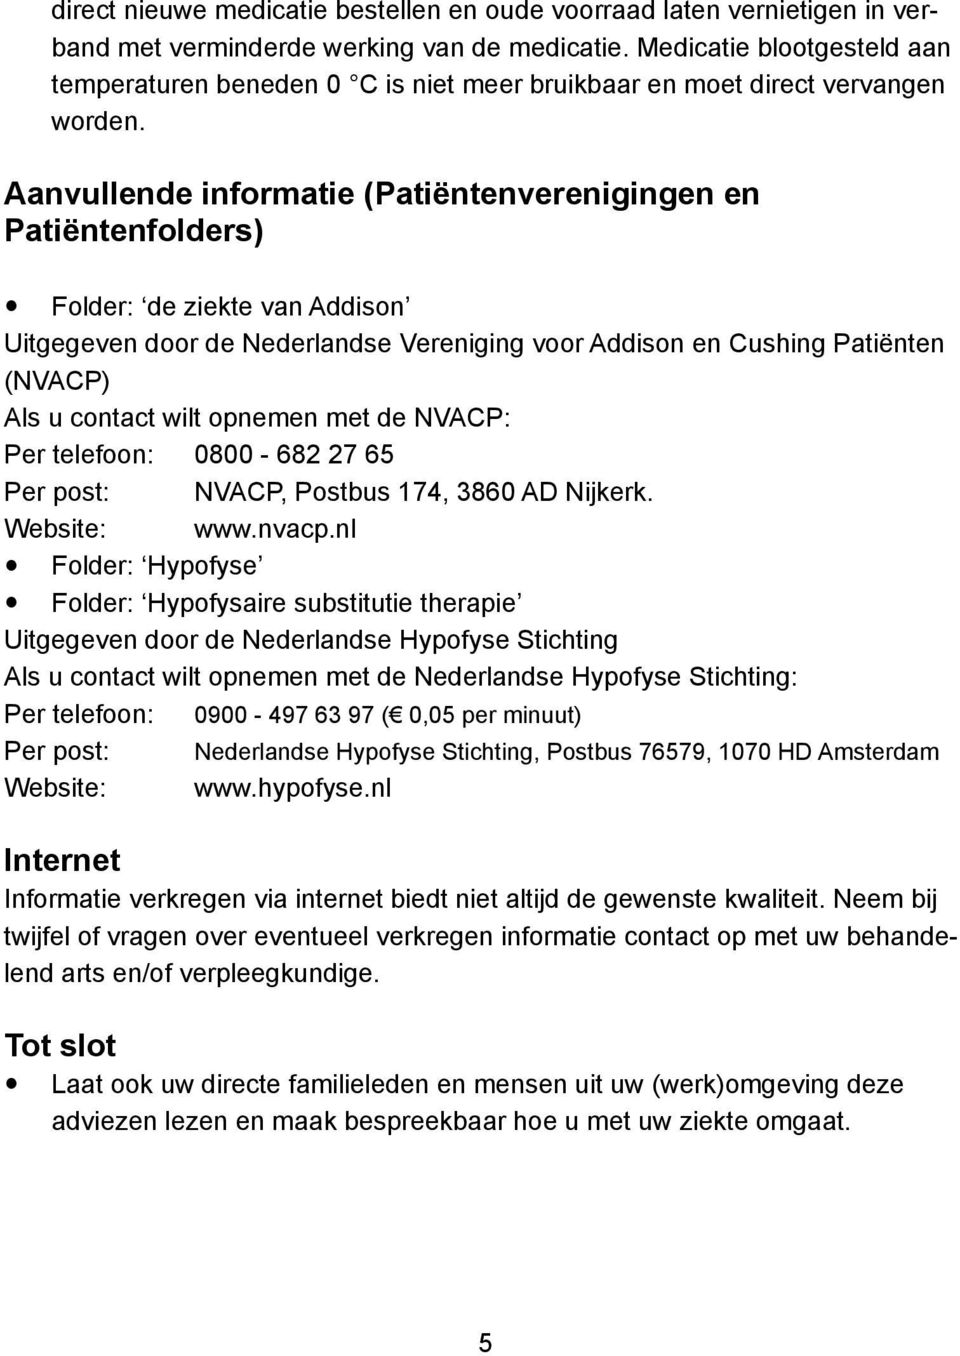 Aanvullende informatie (Patiëntenverenigingen en Patiëntenfolders) Folder: de ziekte van Addison Uitgegeven door de Nederlandse Vereniging voor Addison en Cushing Patiënten (NVACP) Als u contact wilt